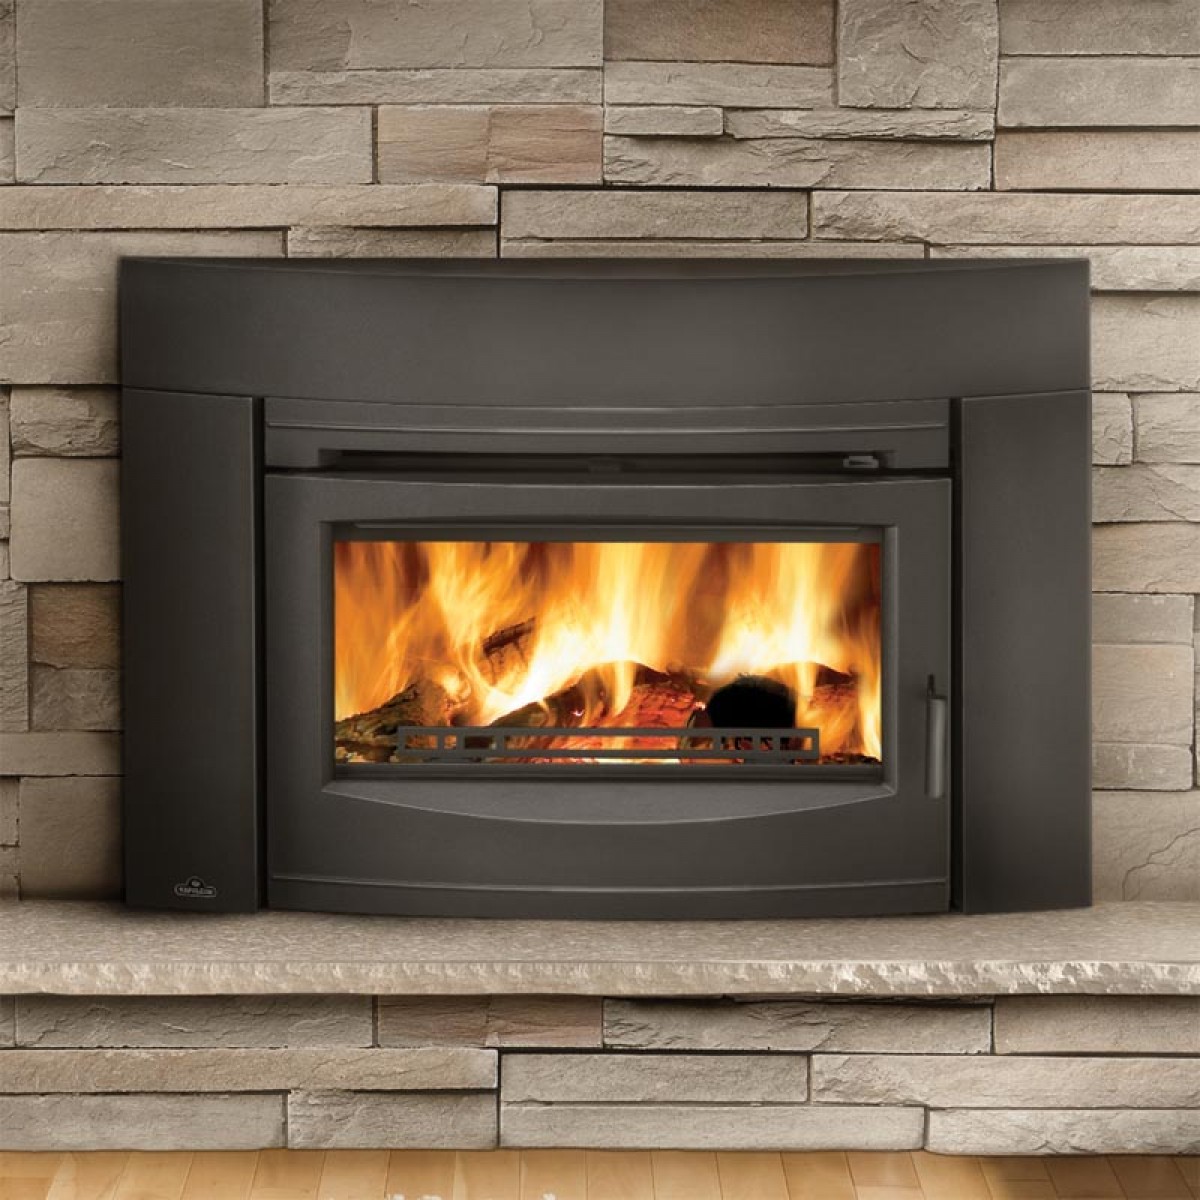  wood burning fireplace